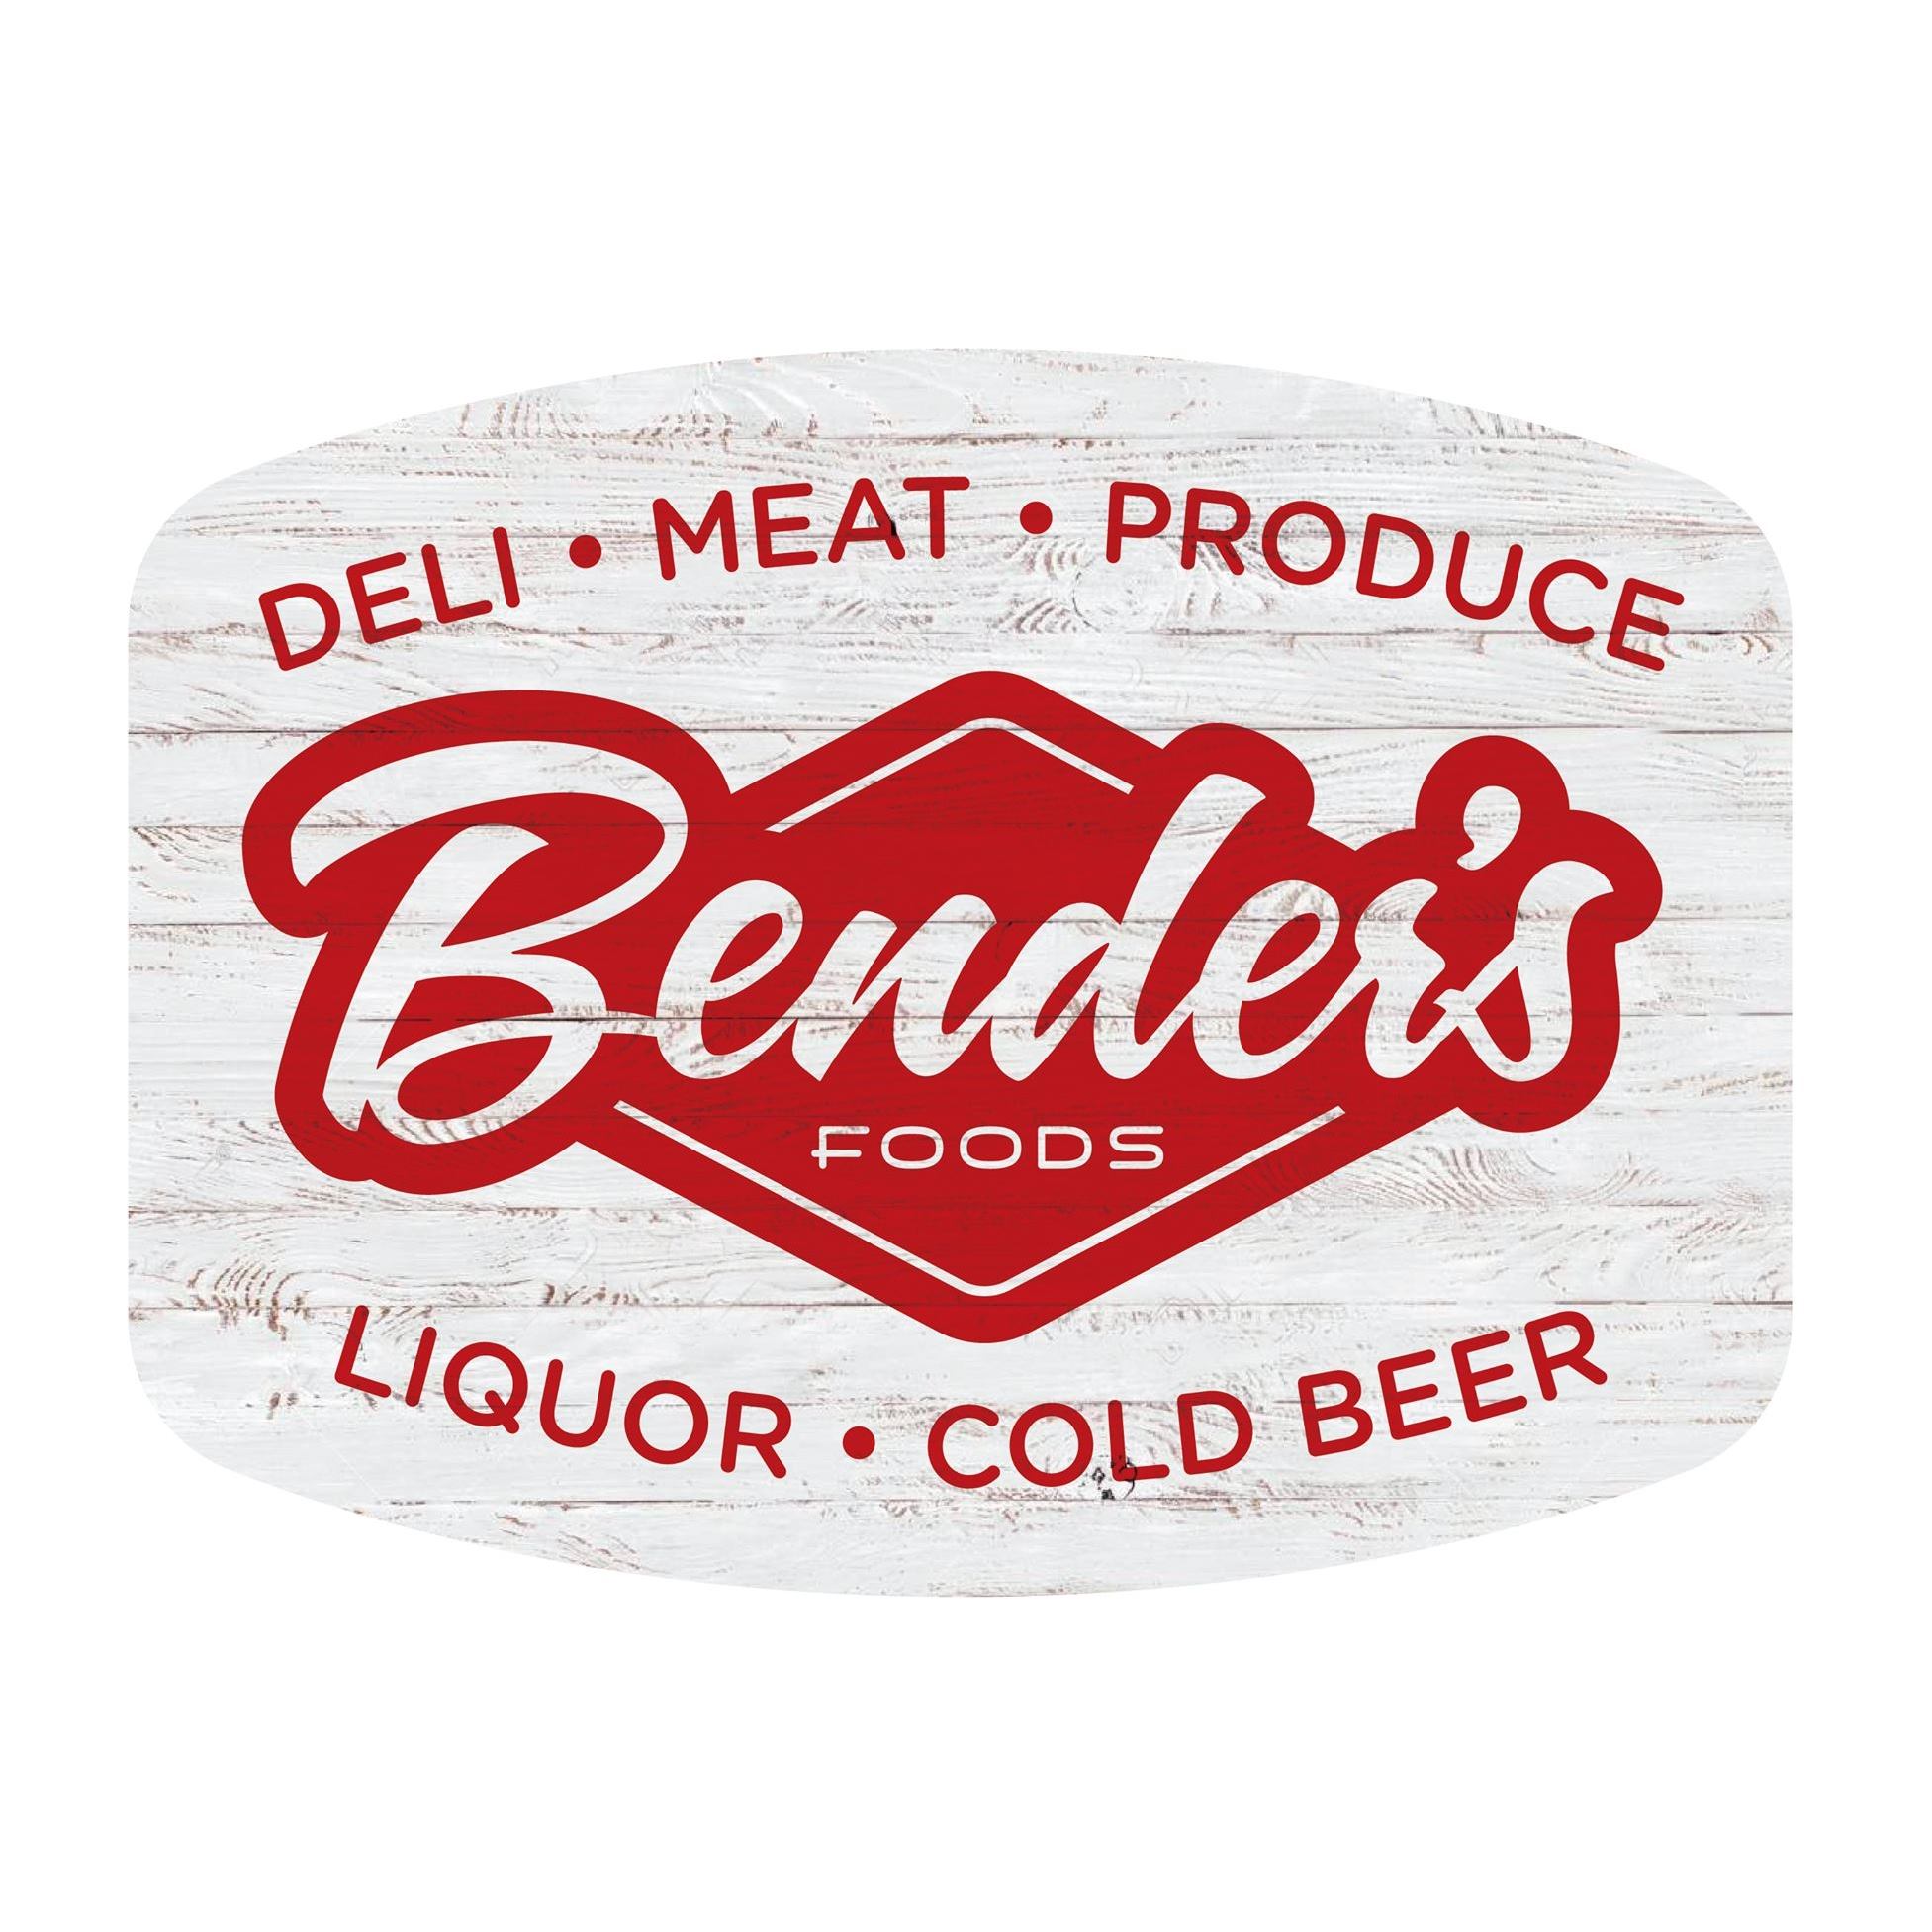 benders foods